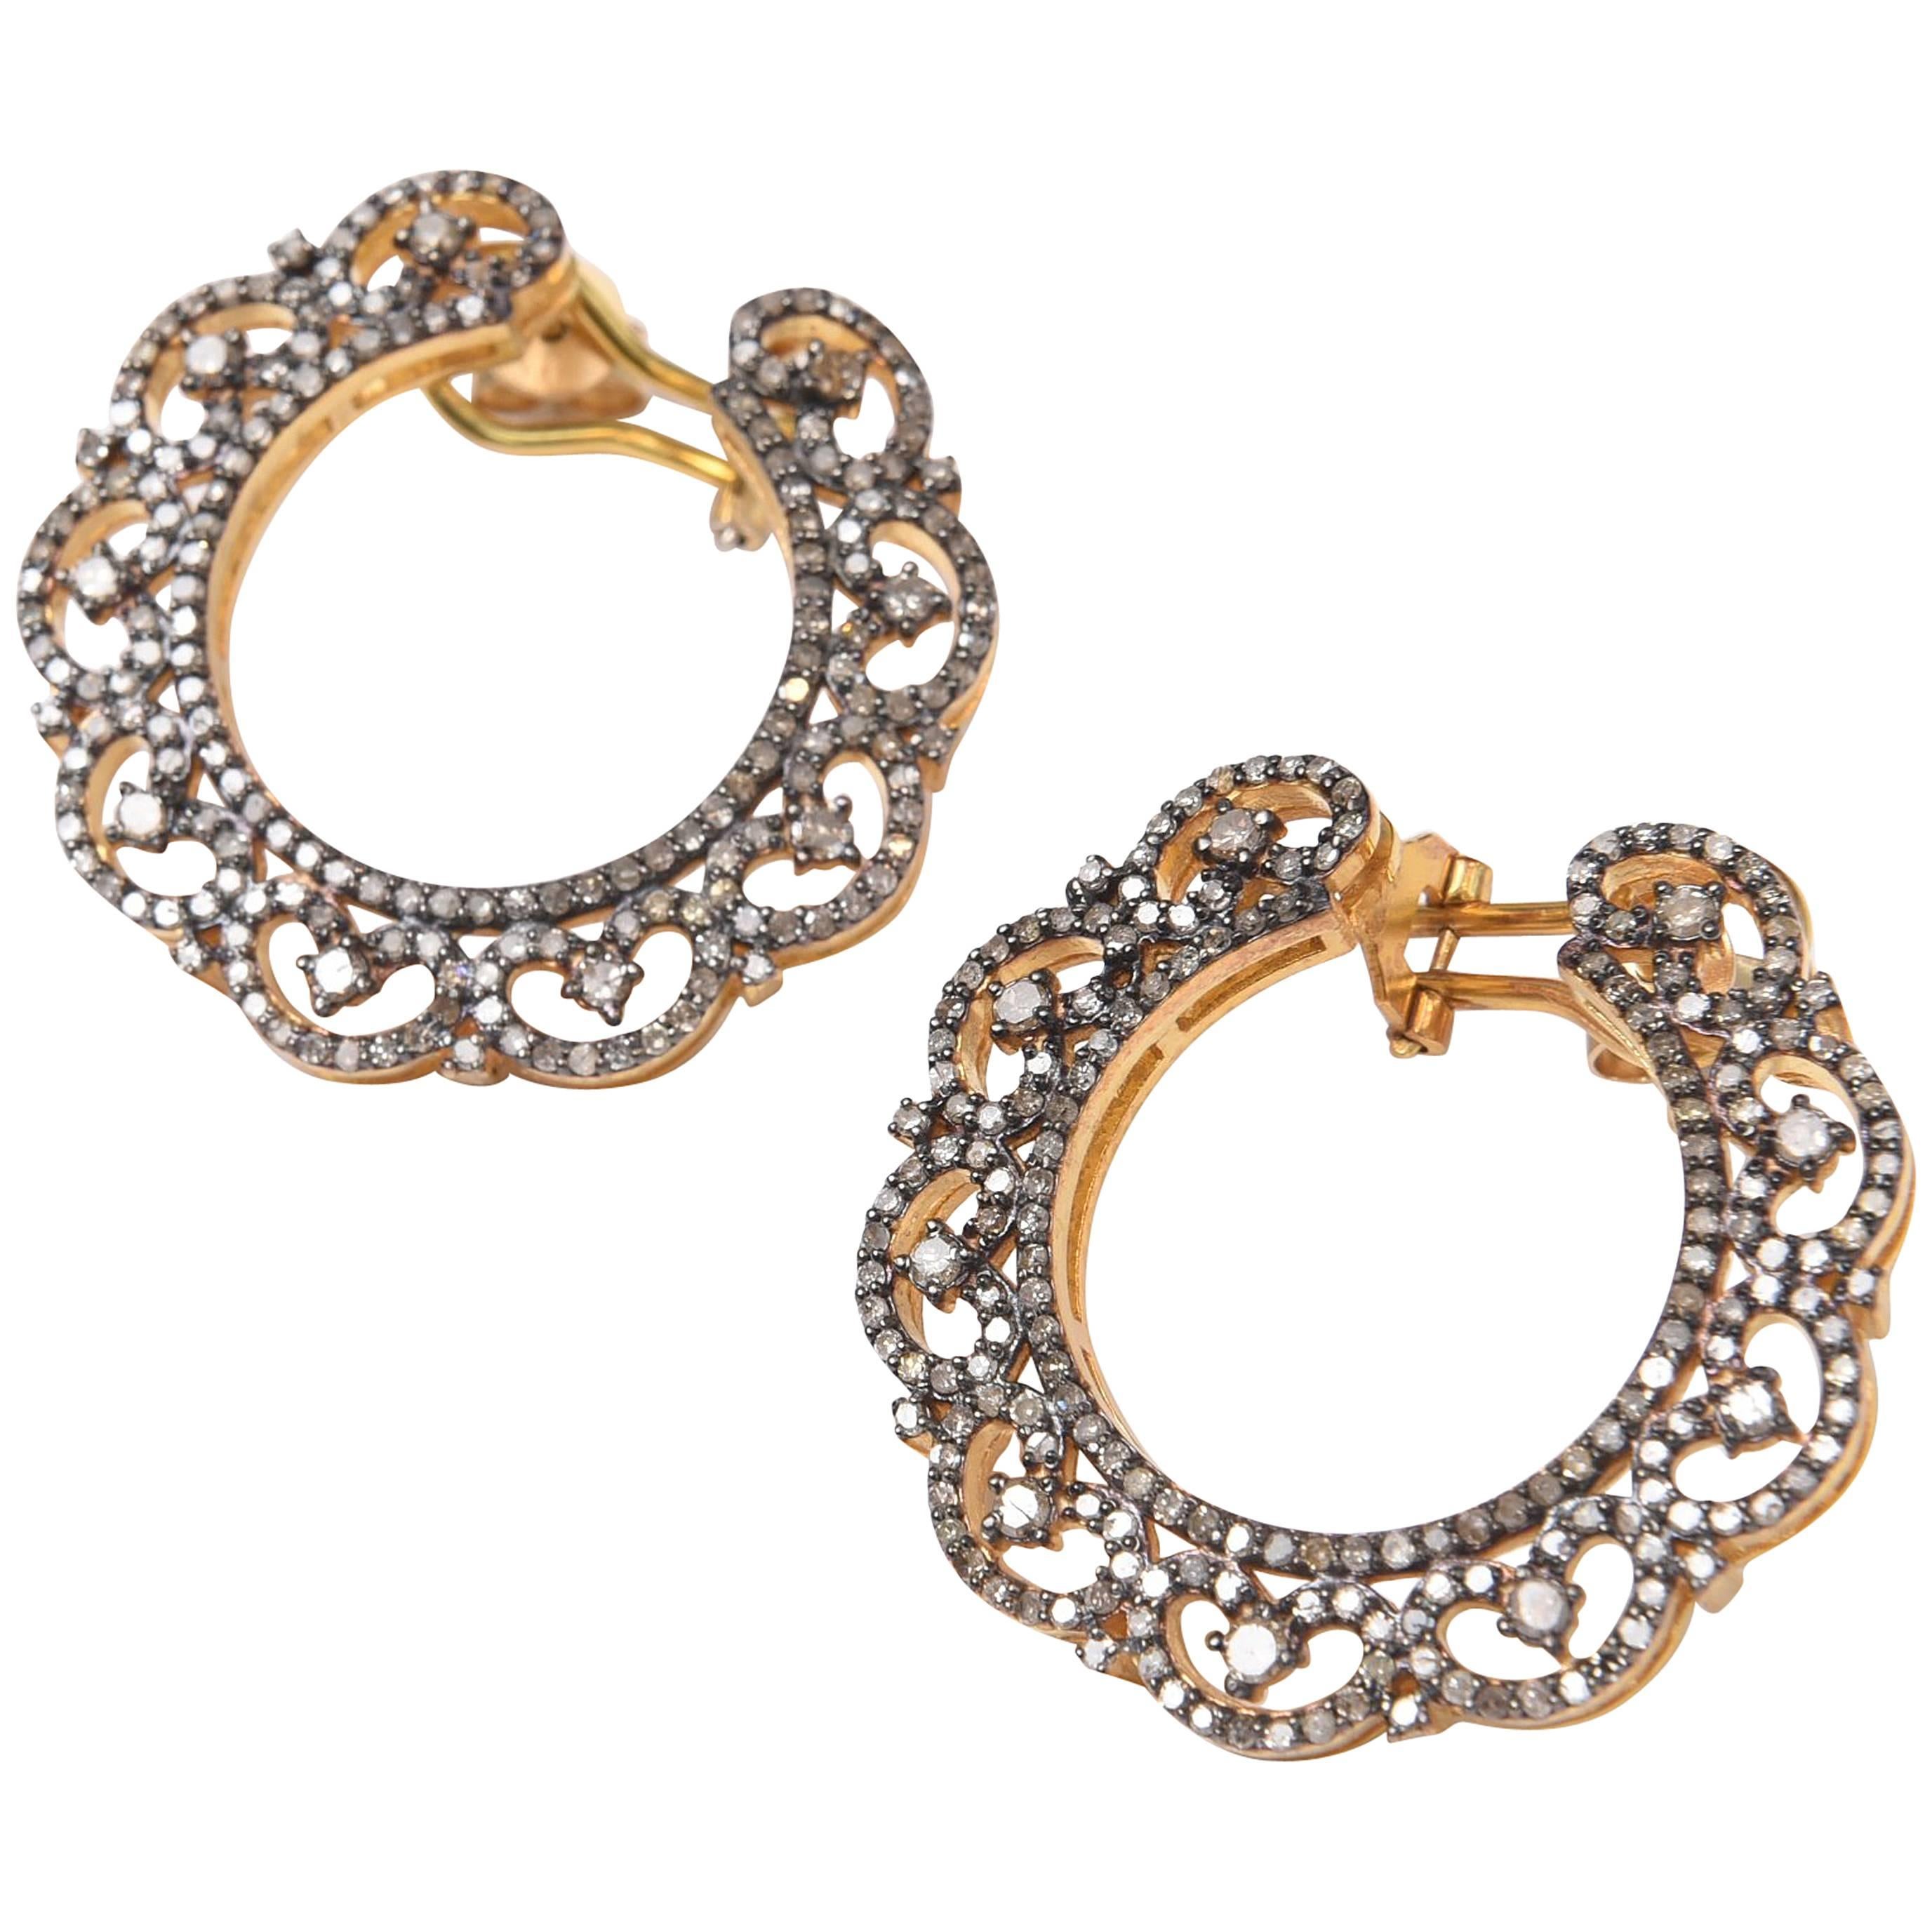 Pave` Diamond Wreath Hoop Earrings